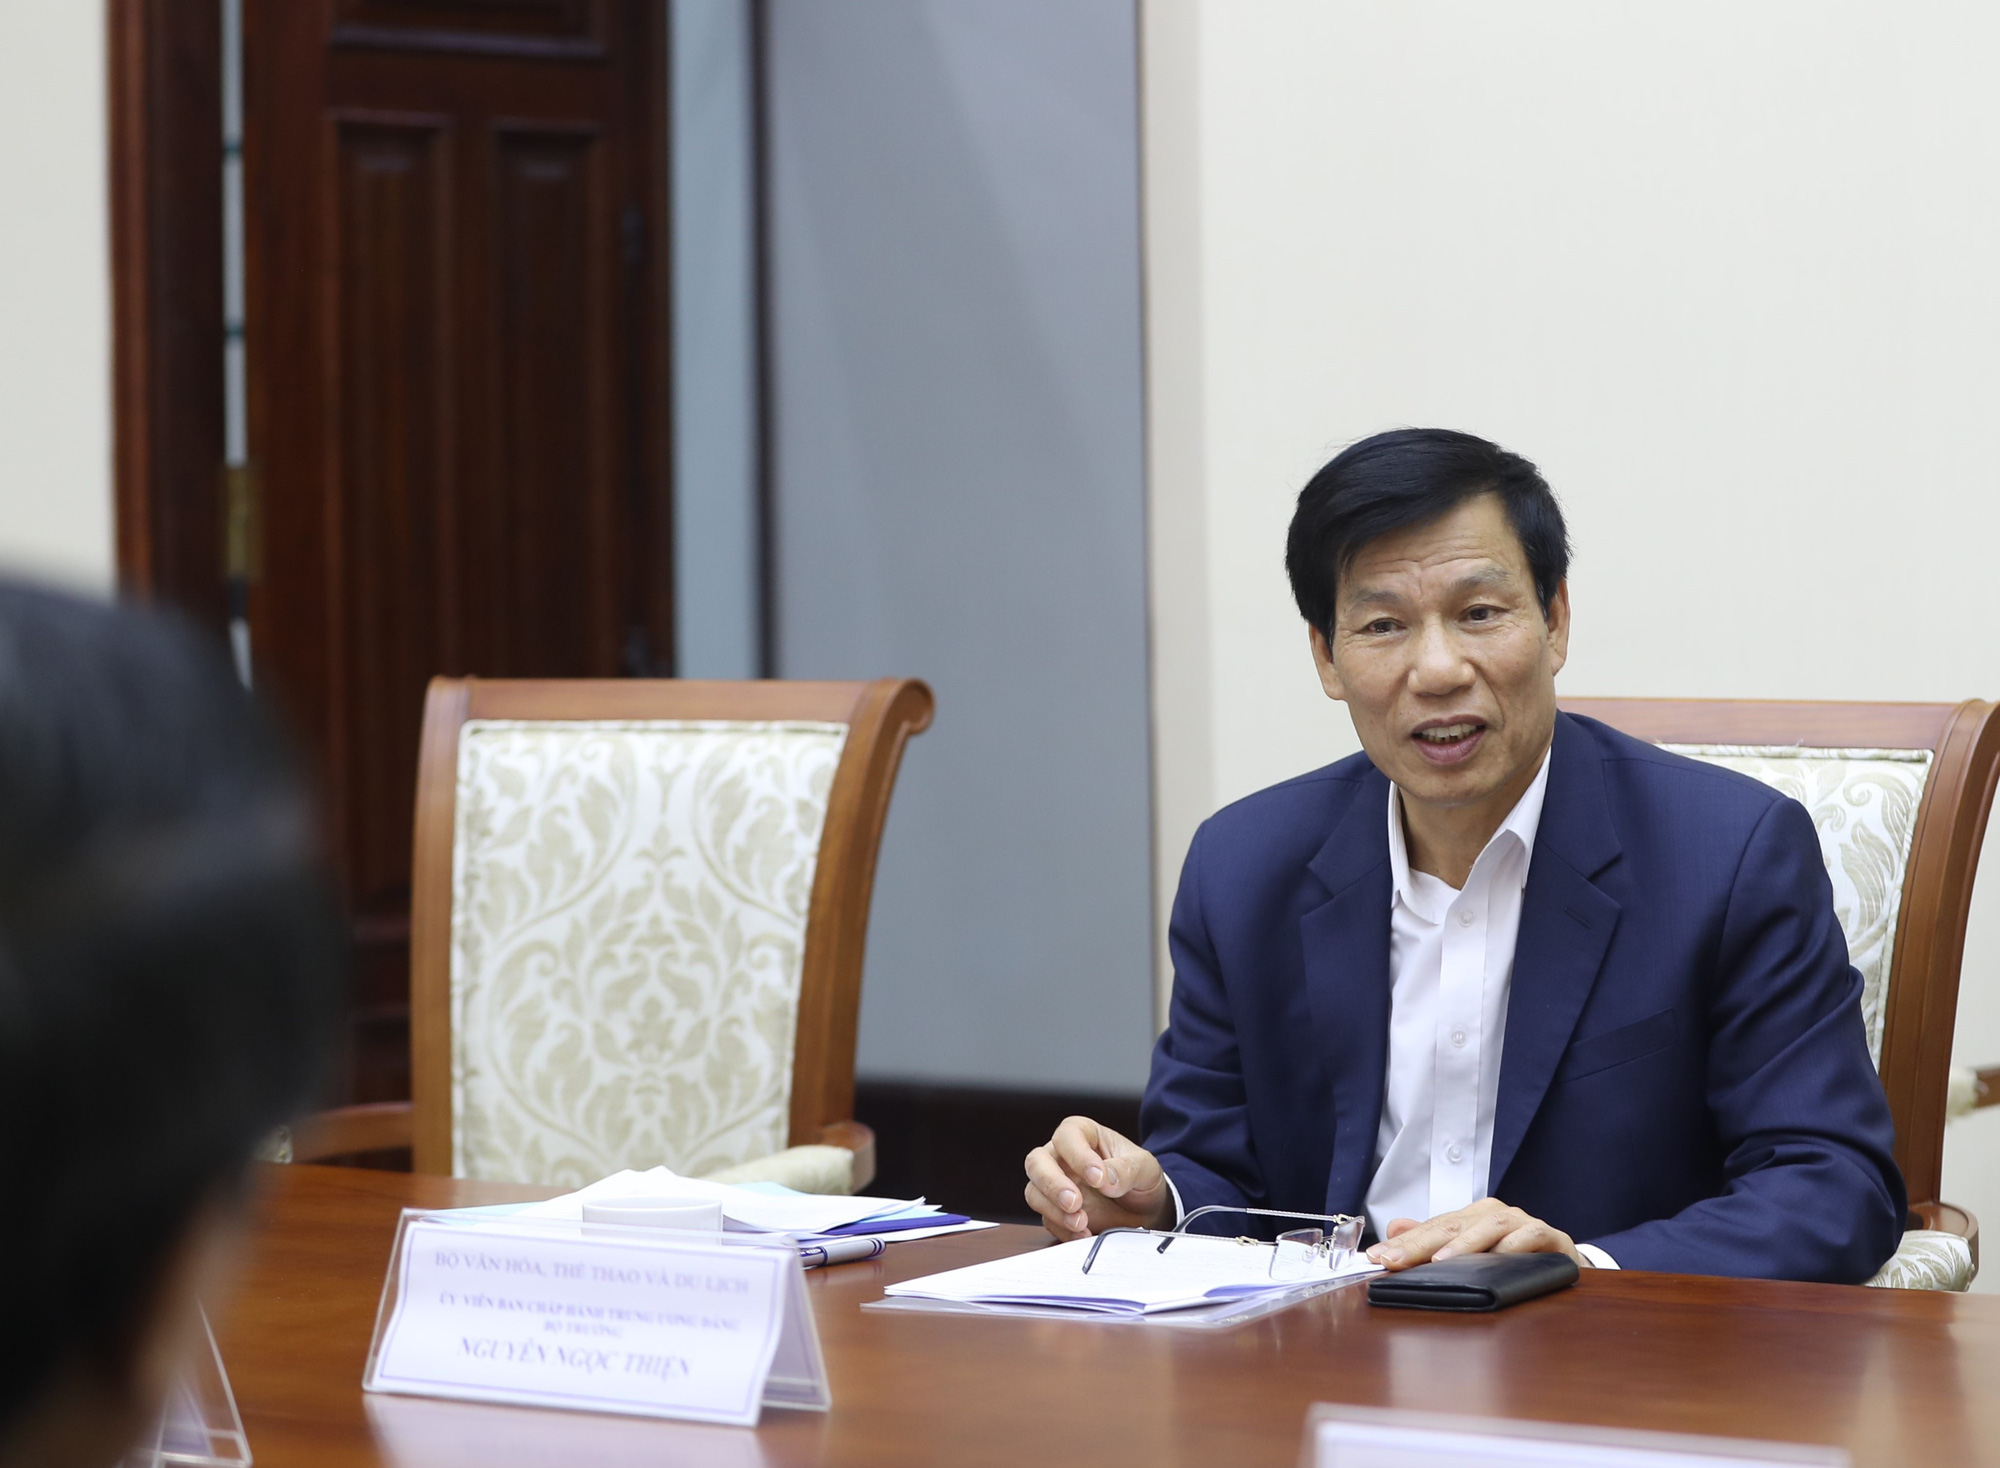 Bộ trưởng Nguyễn Ngọc Thiện: Lãnh đạo tỉnh Quảng Trị cần phải xác định đây là thời kỳ đặt nền móng về phát triển du lịch trên địa bàn - Ảnh 3.